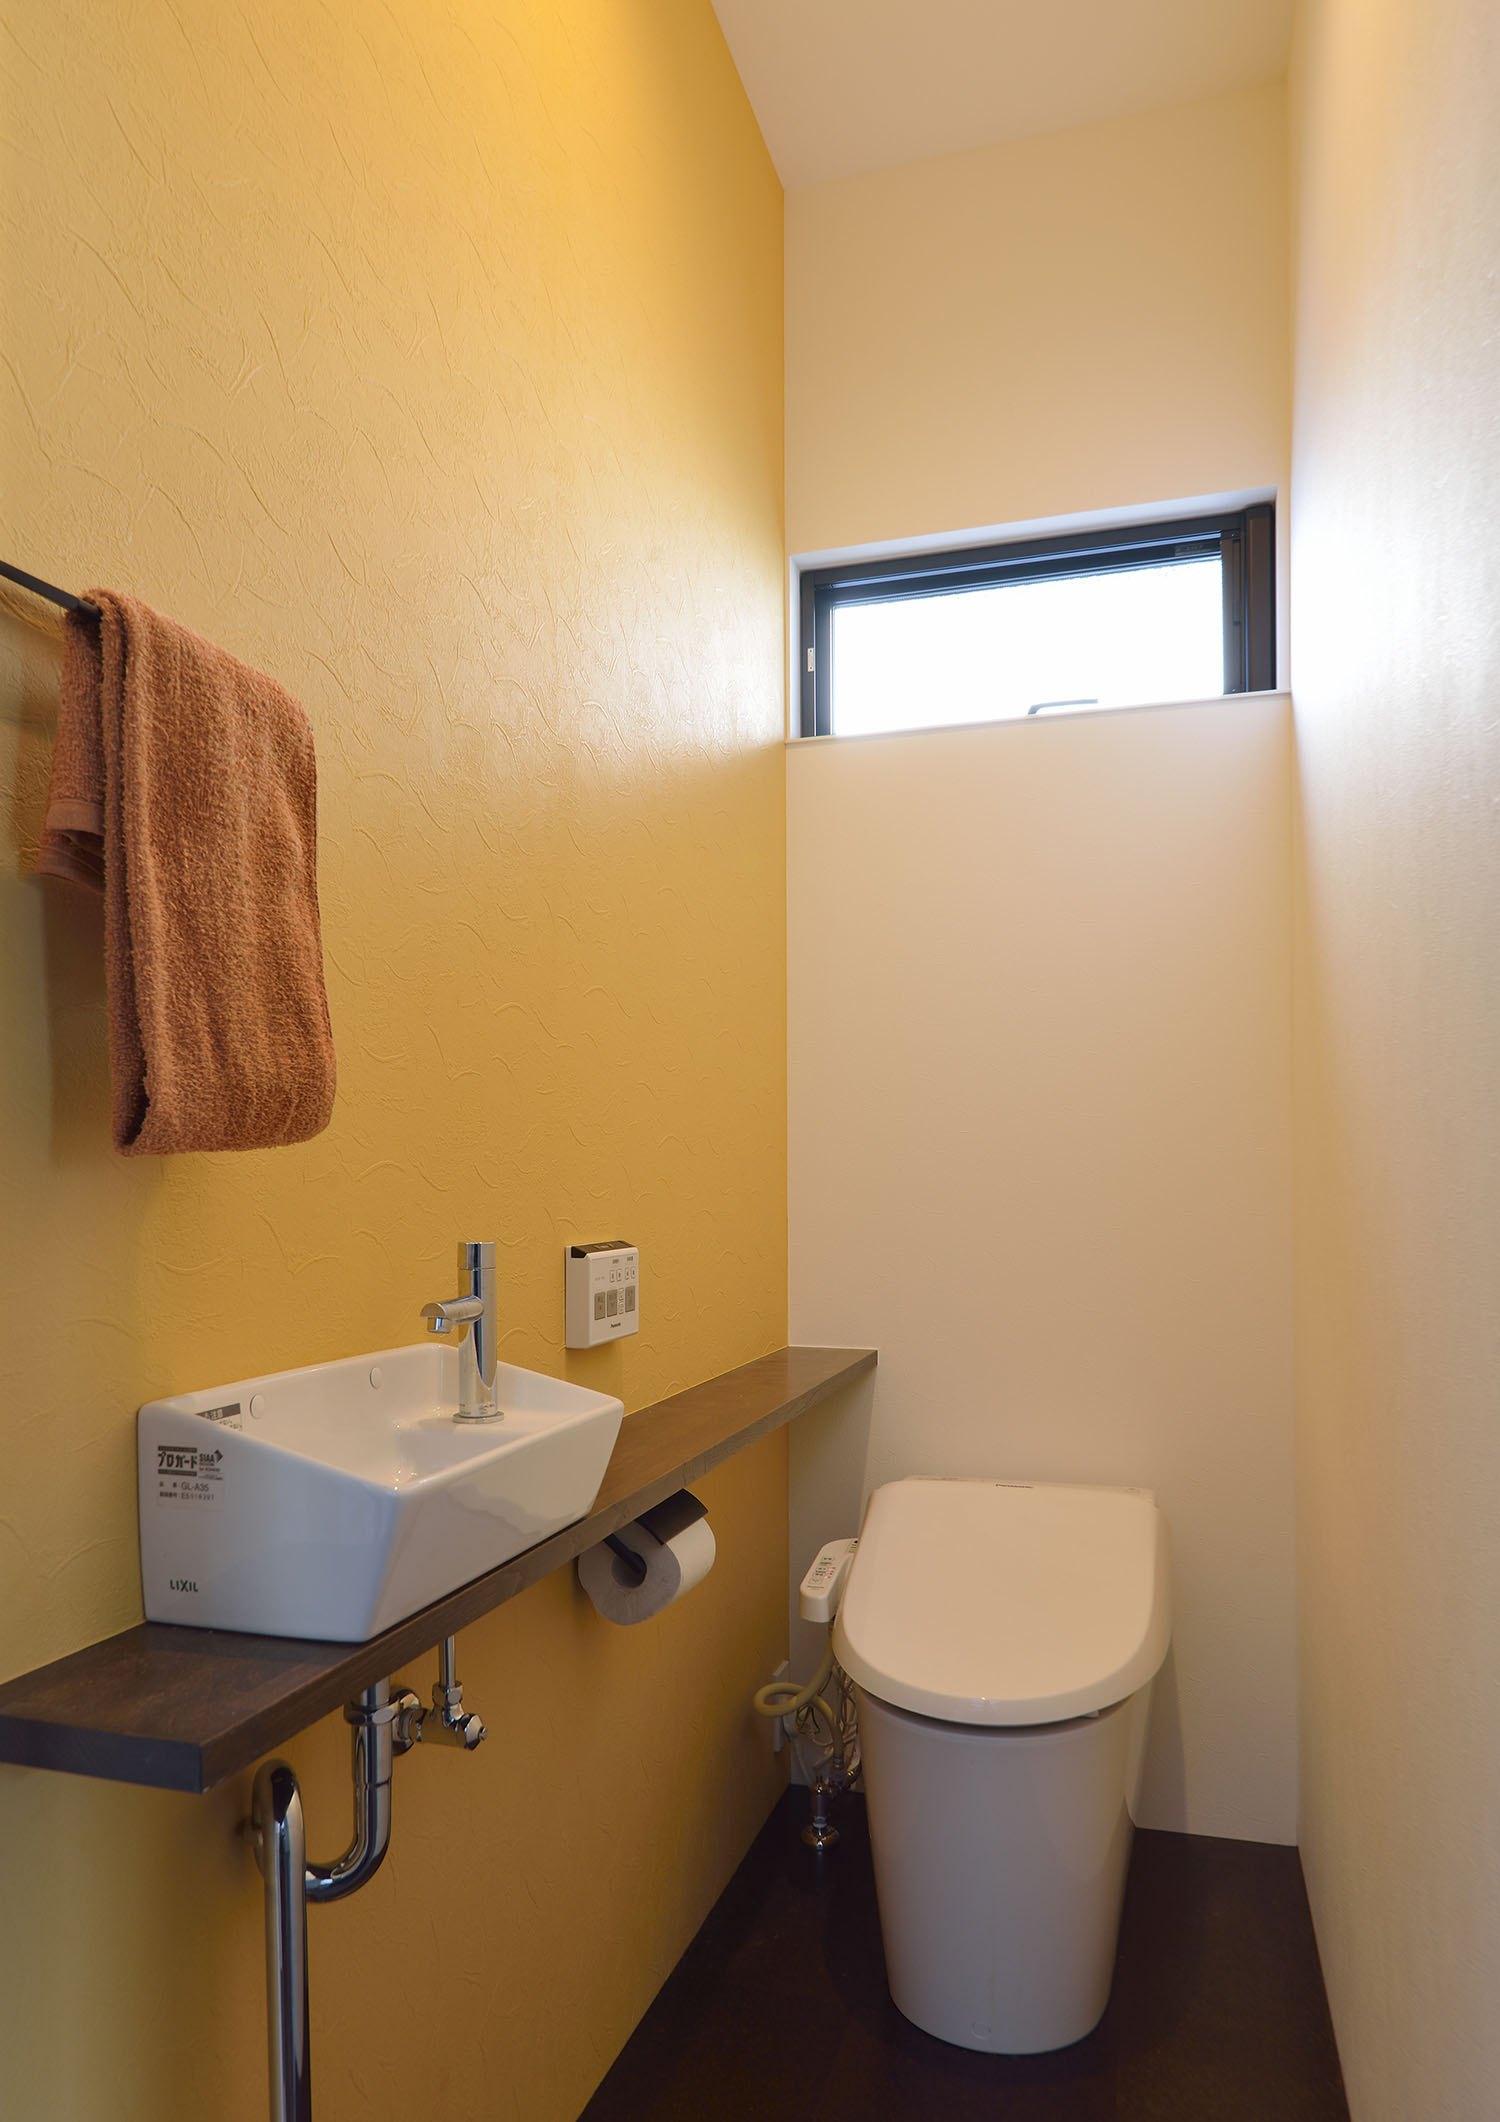 スリット窓や手洗いカウンターがある、黄色のアクセントクロスのトイレ・デザイン住宅